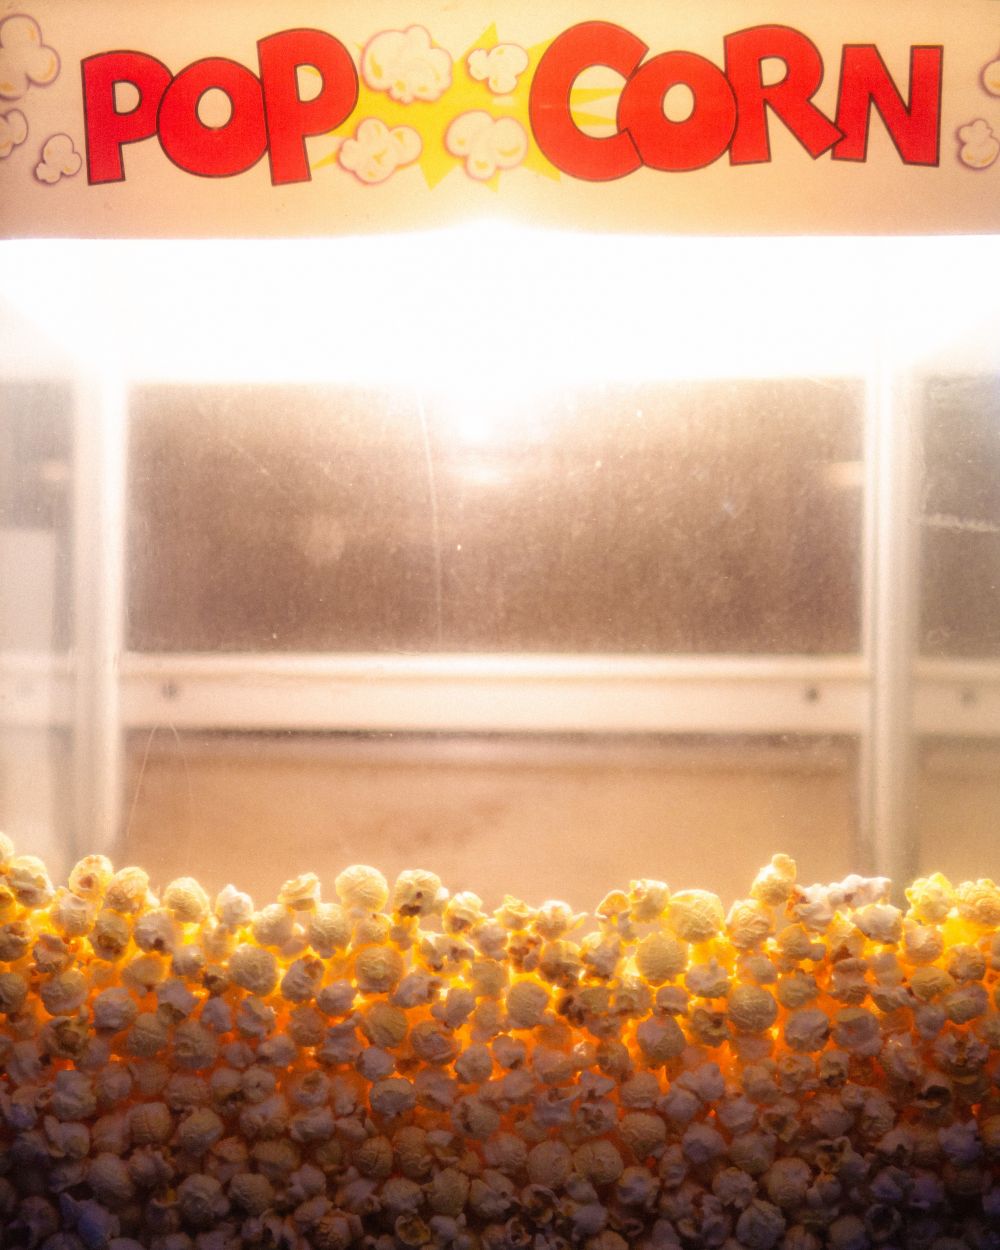 Her kan du købe en popcornmaskine